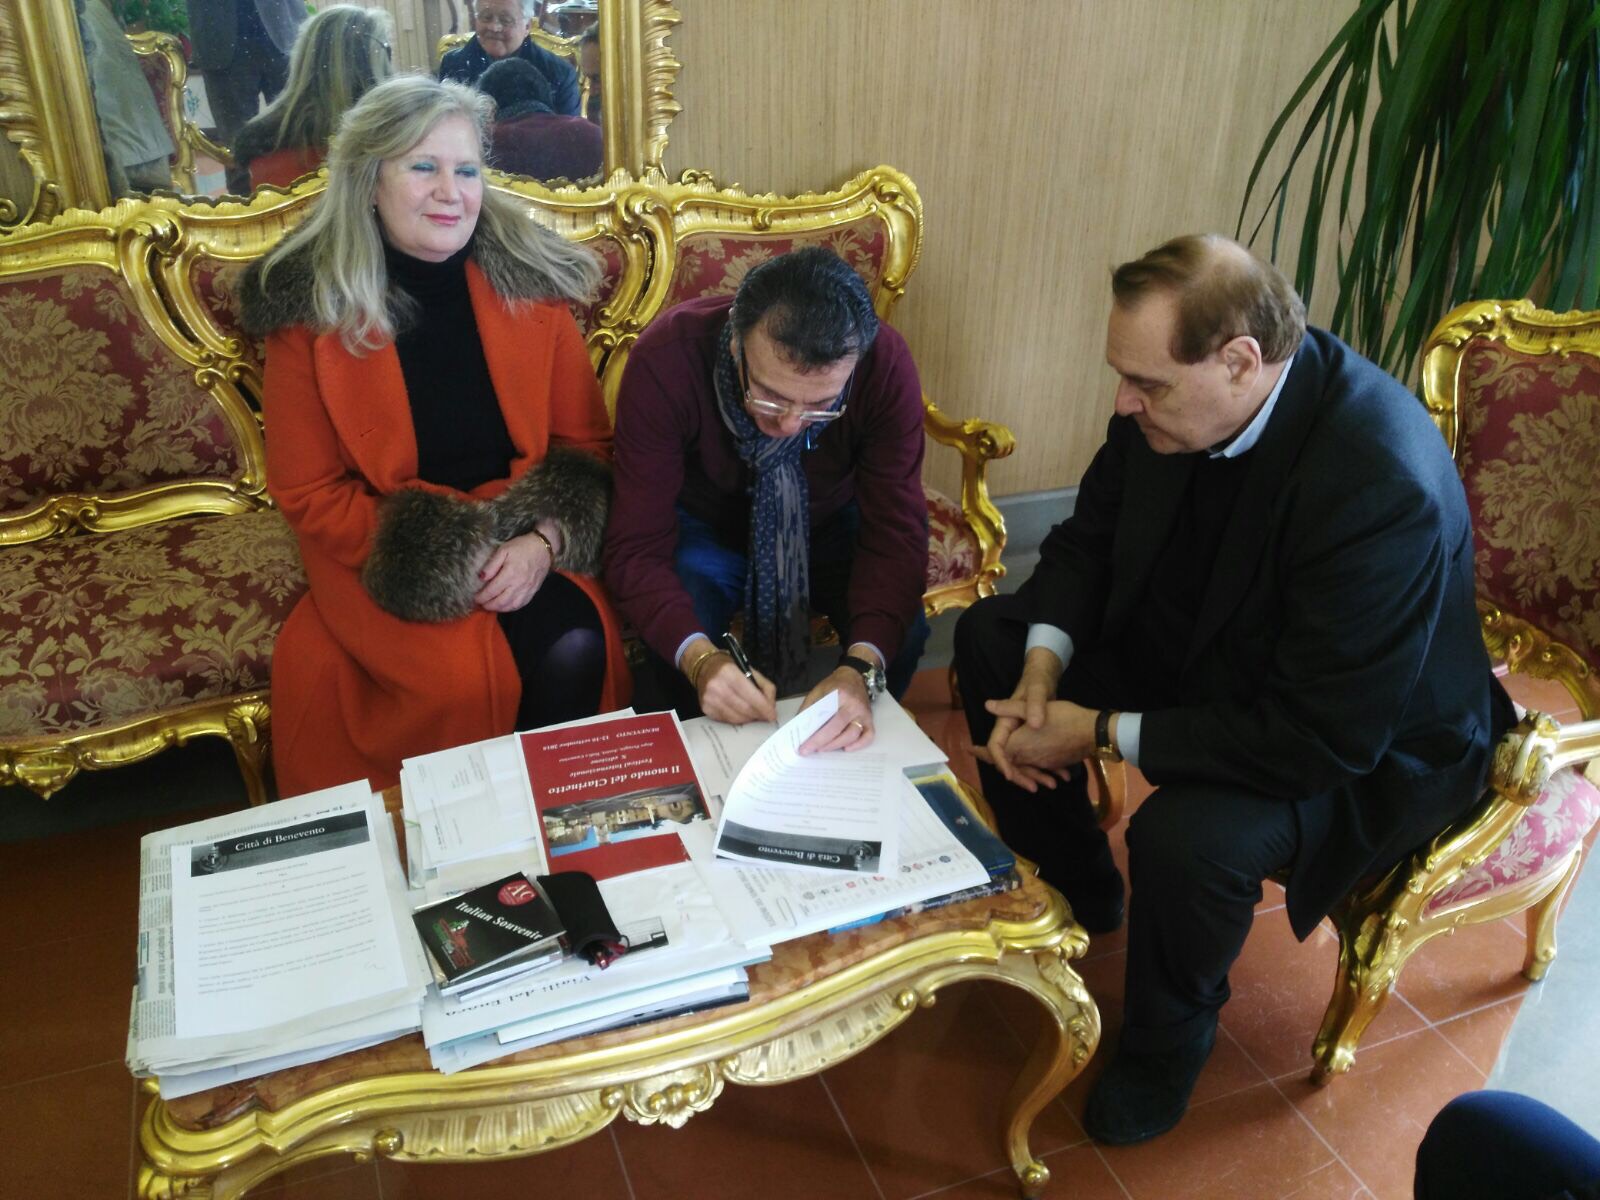 Benevento| Firmato protocollo d’intesa tra Comune e Ordine Framacisti